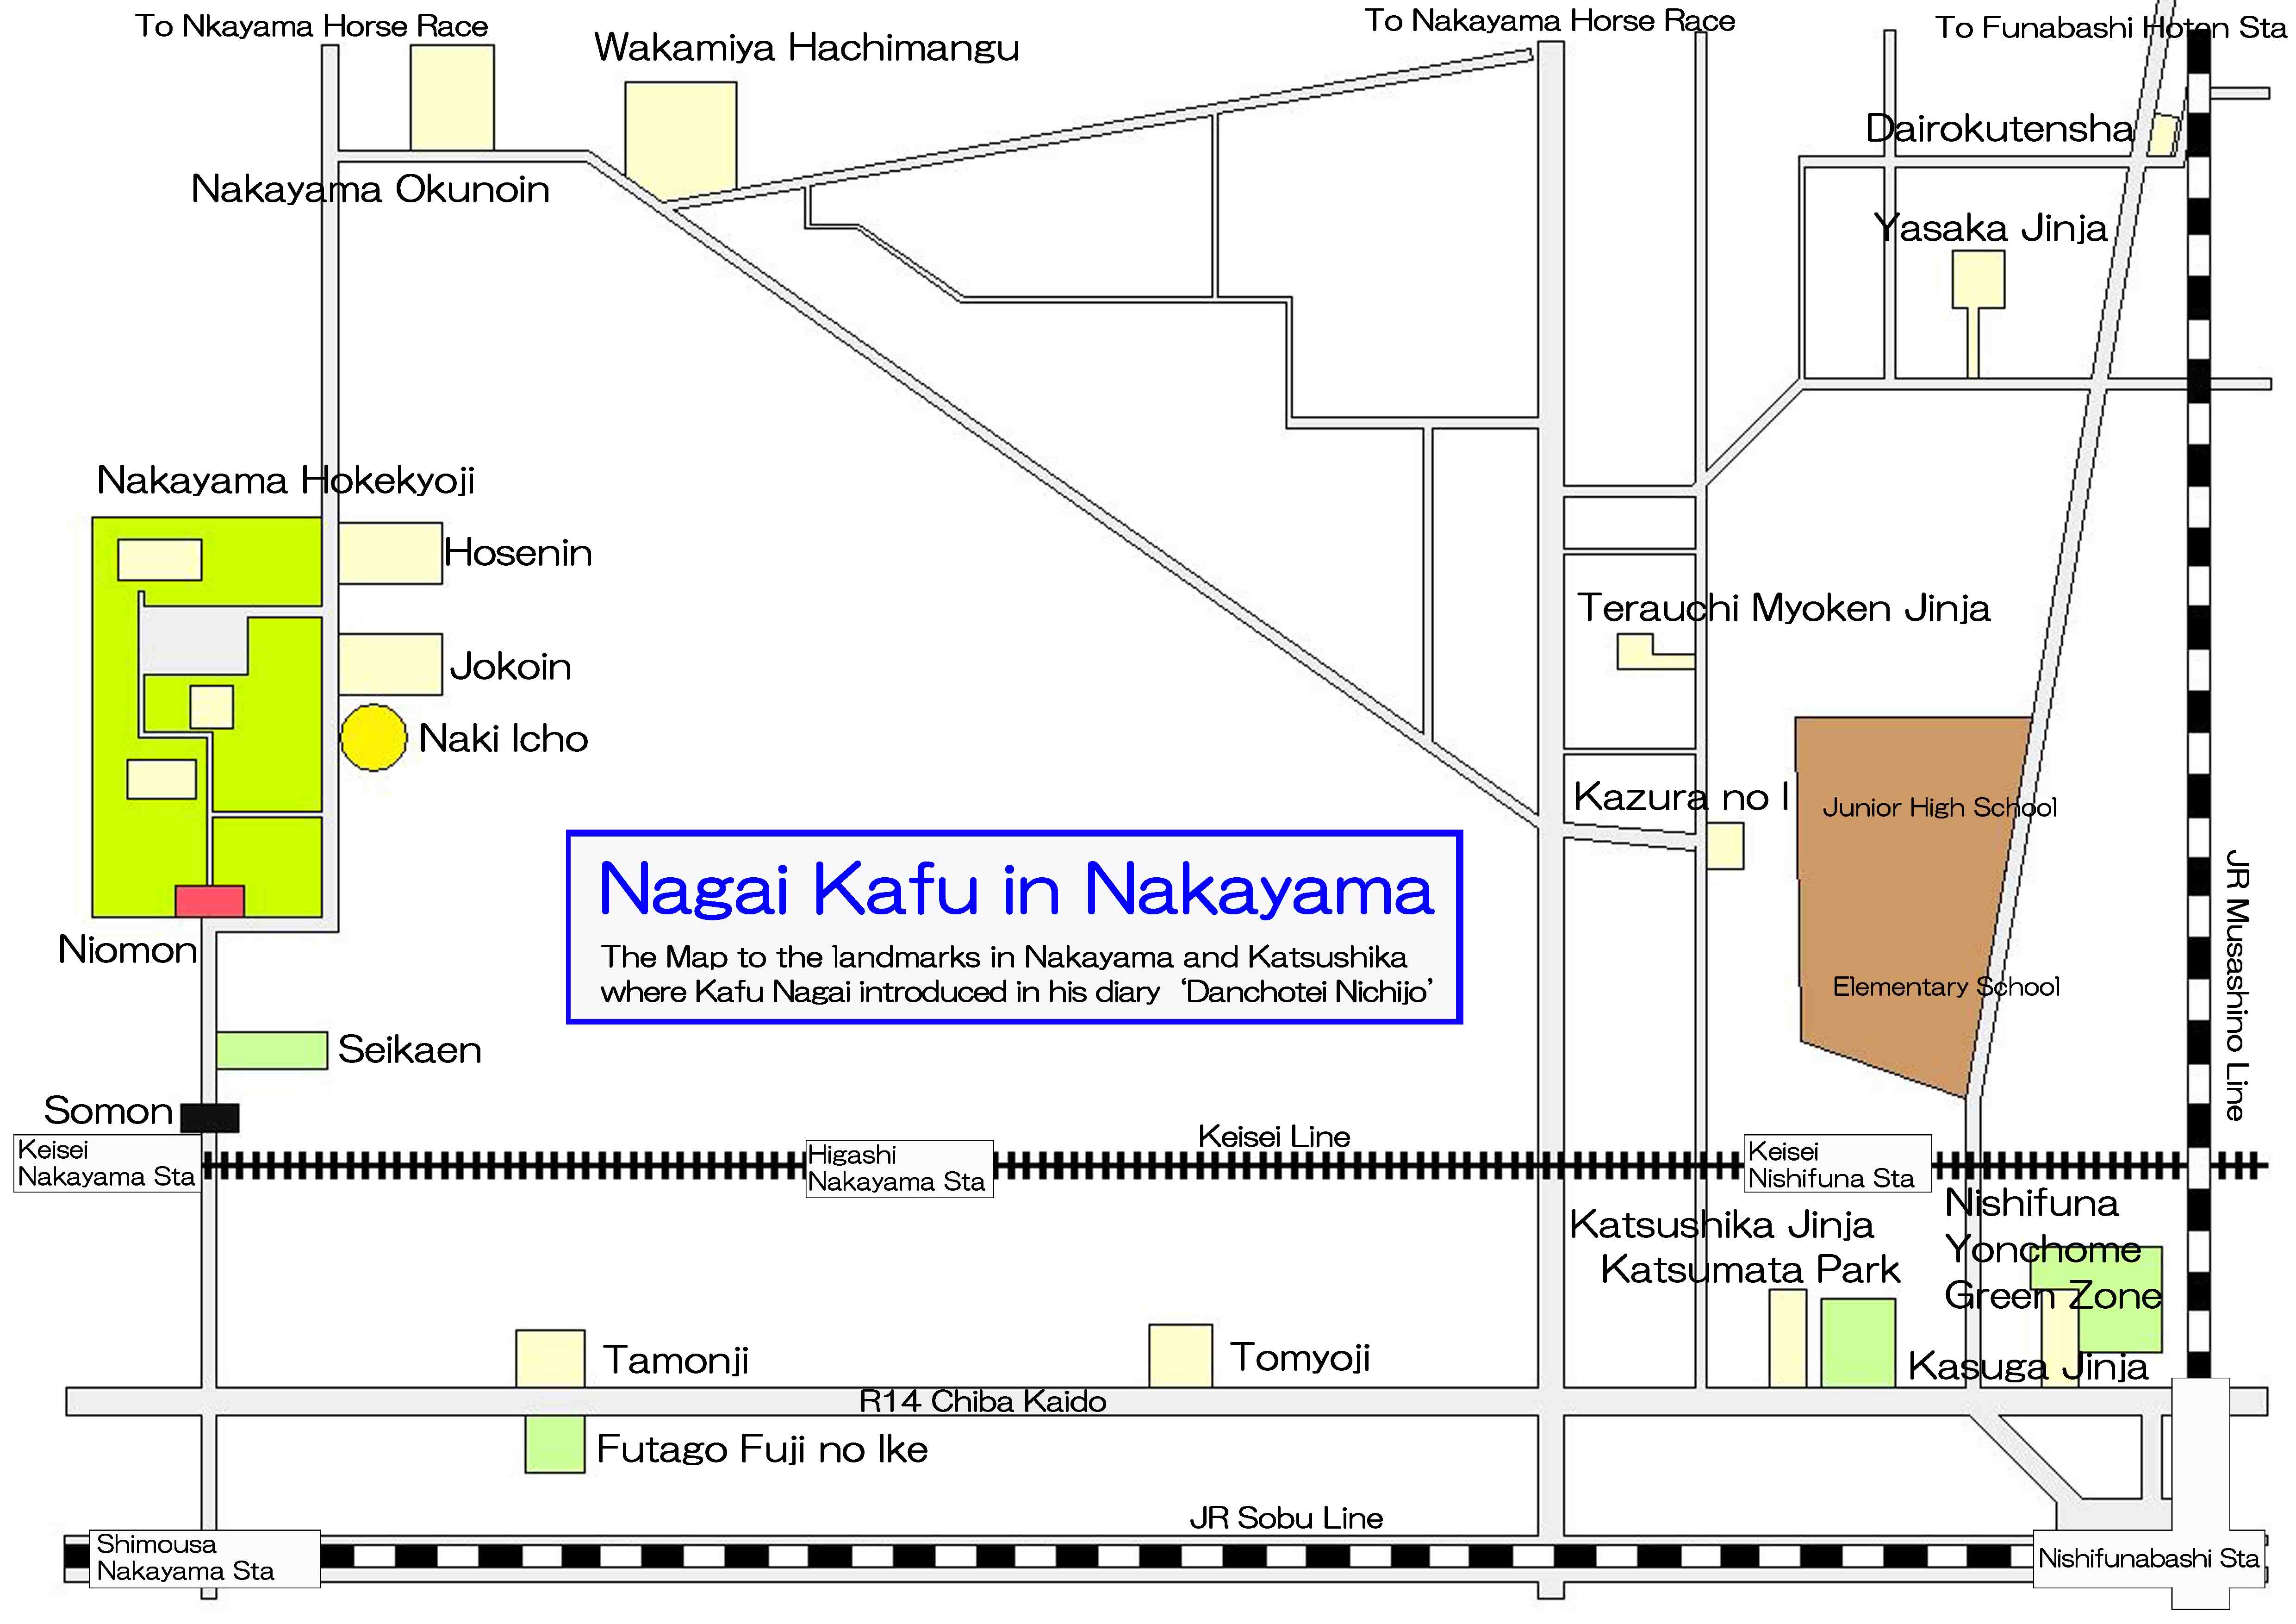 the landmarks related to Kafu Nagai